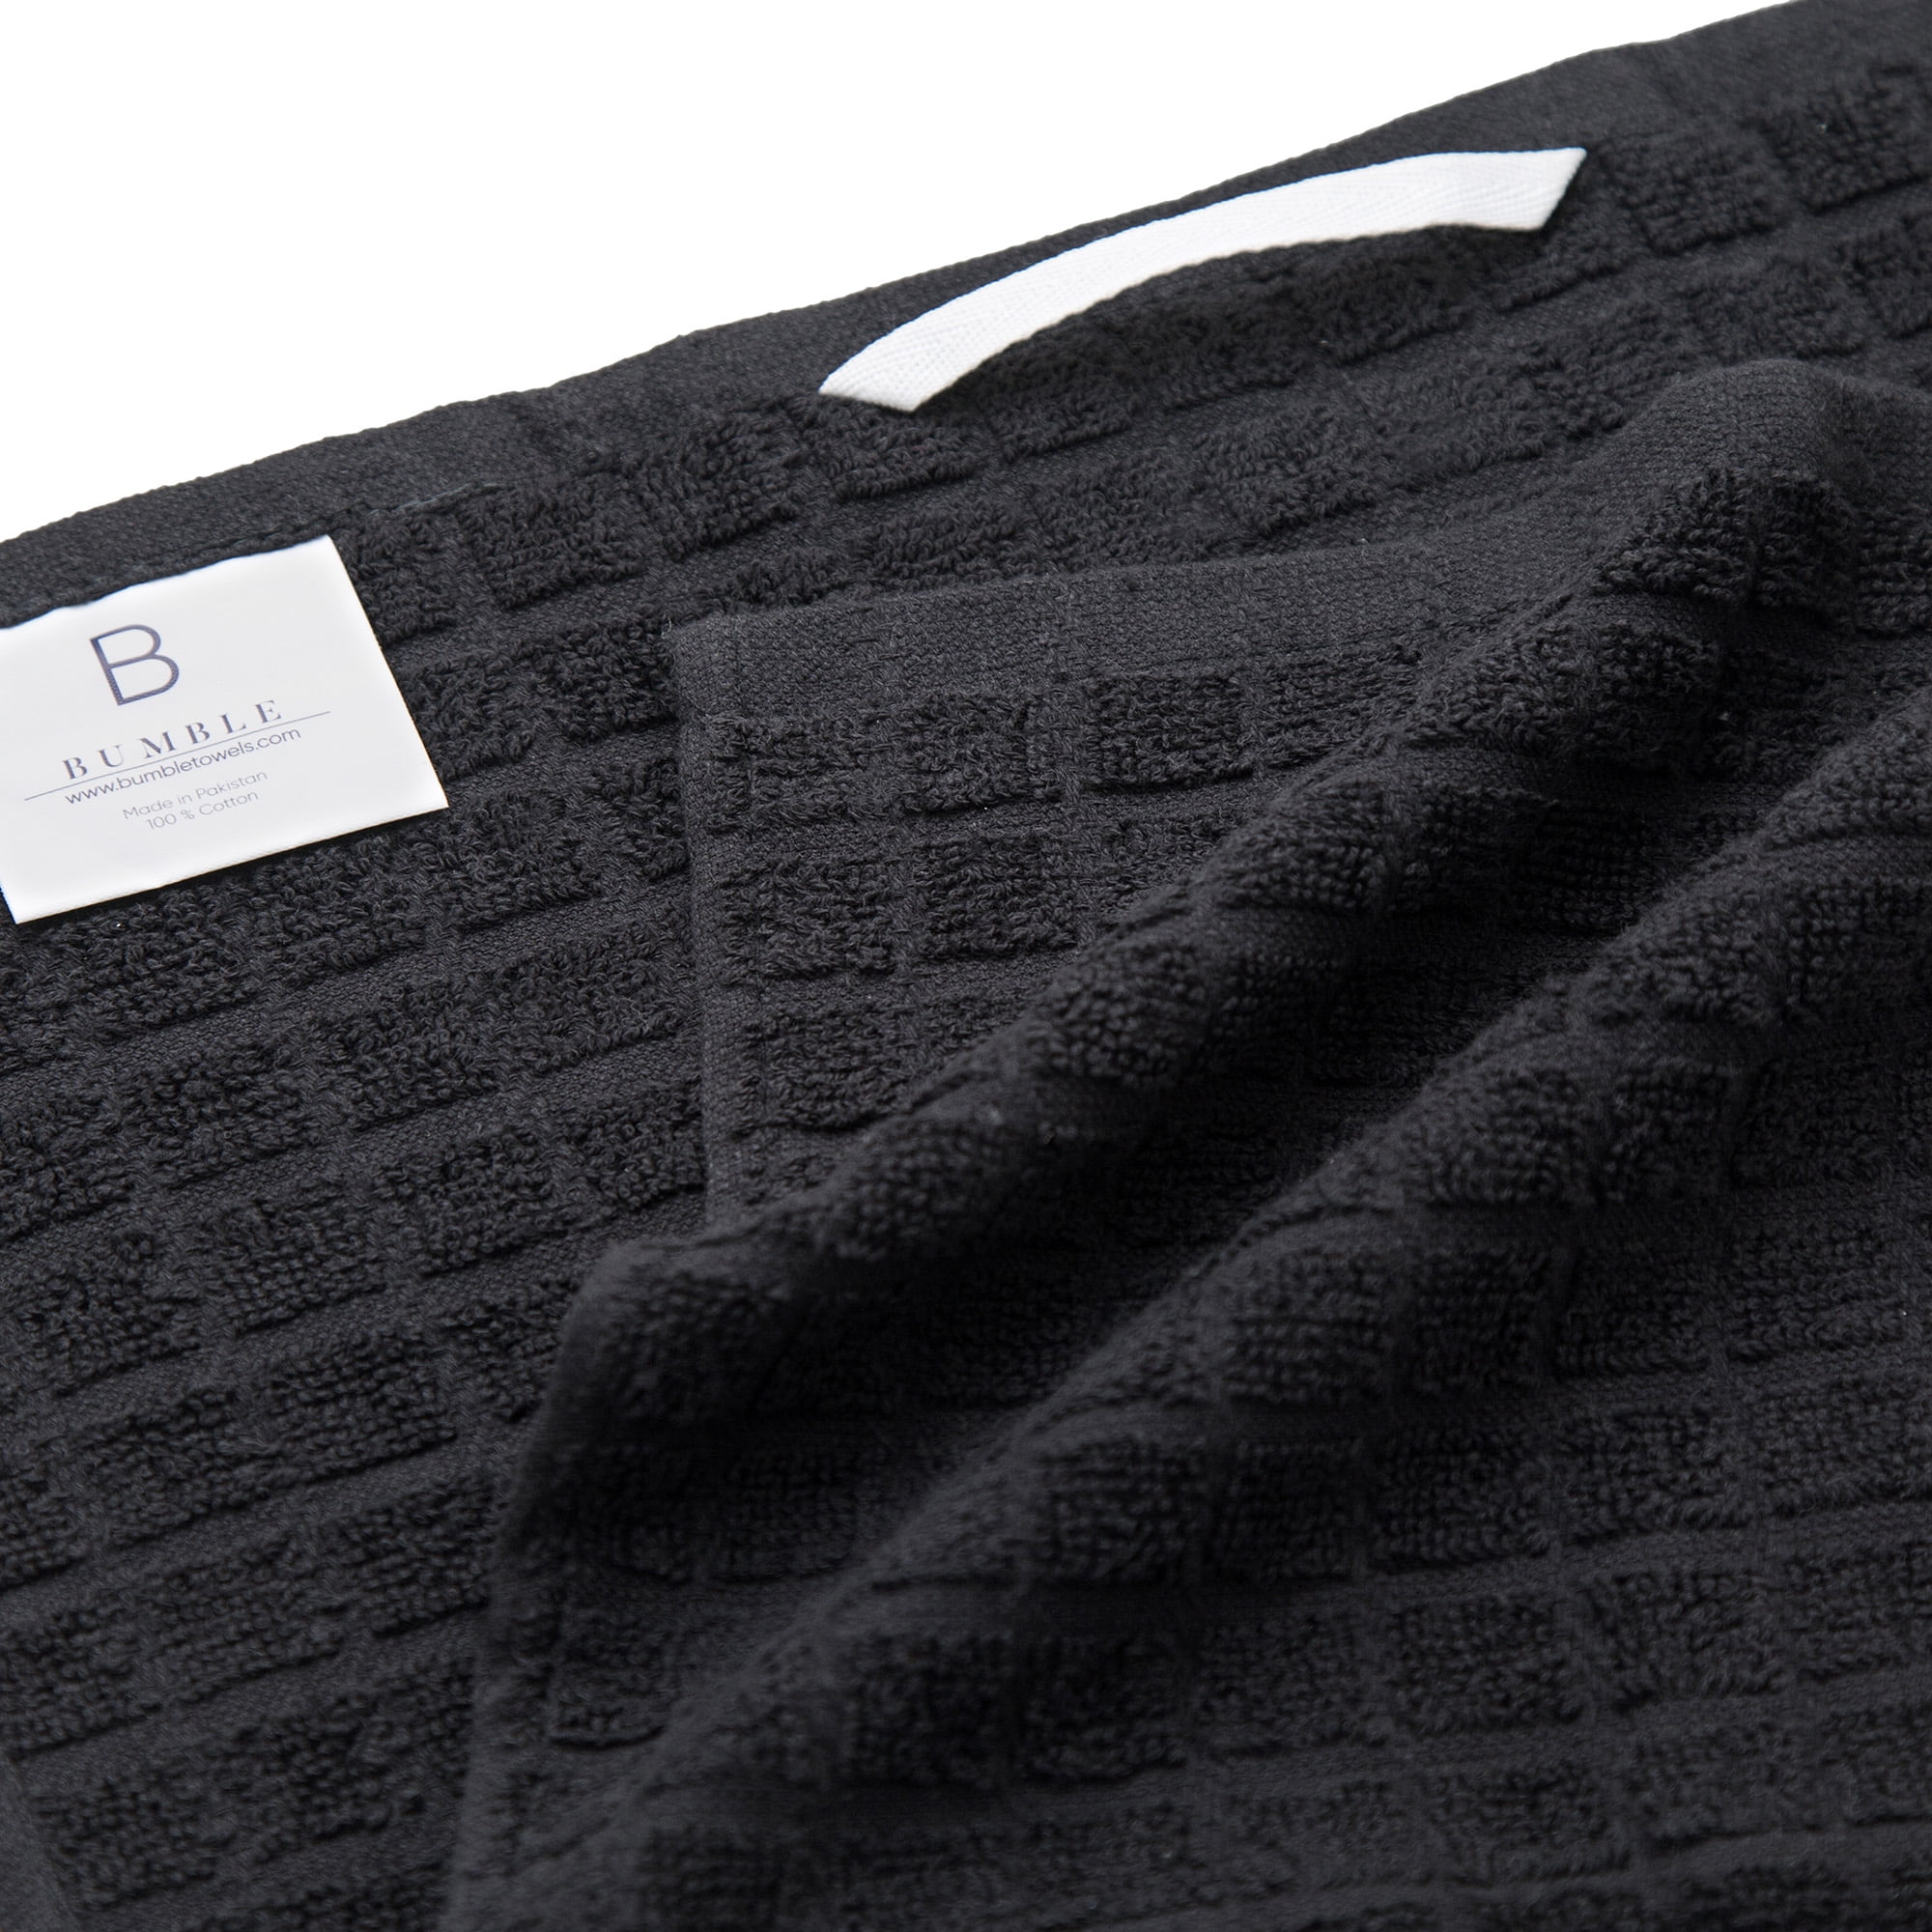 Bumble Towels Premium Kitchen Towels (20”x 28”, 6 Pieces) – Large